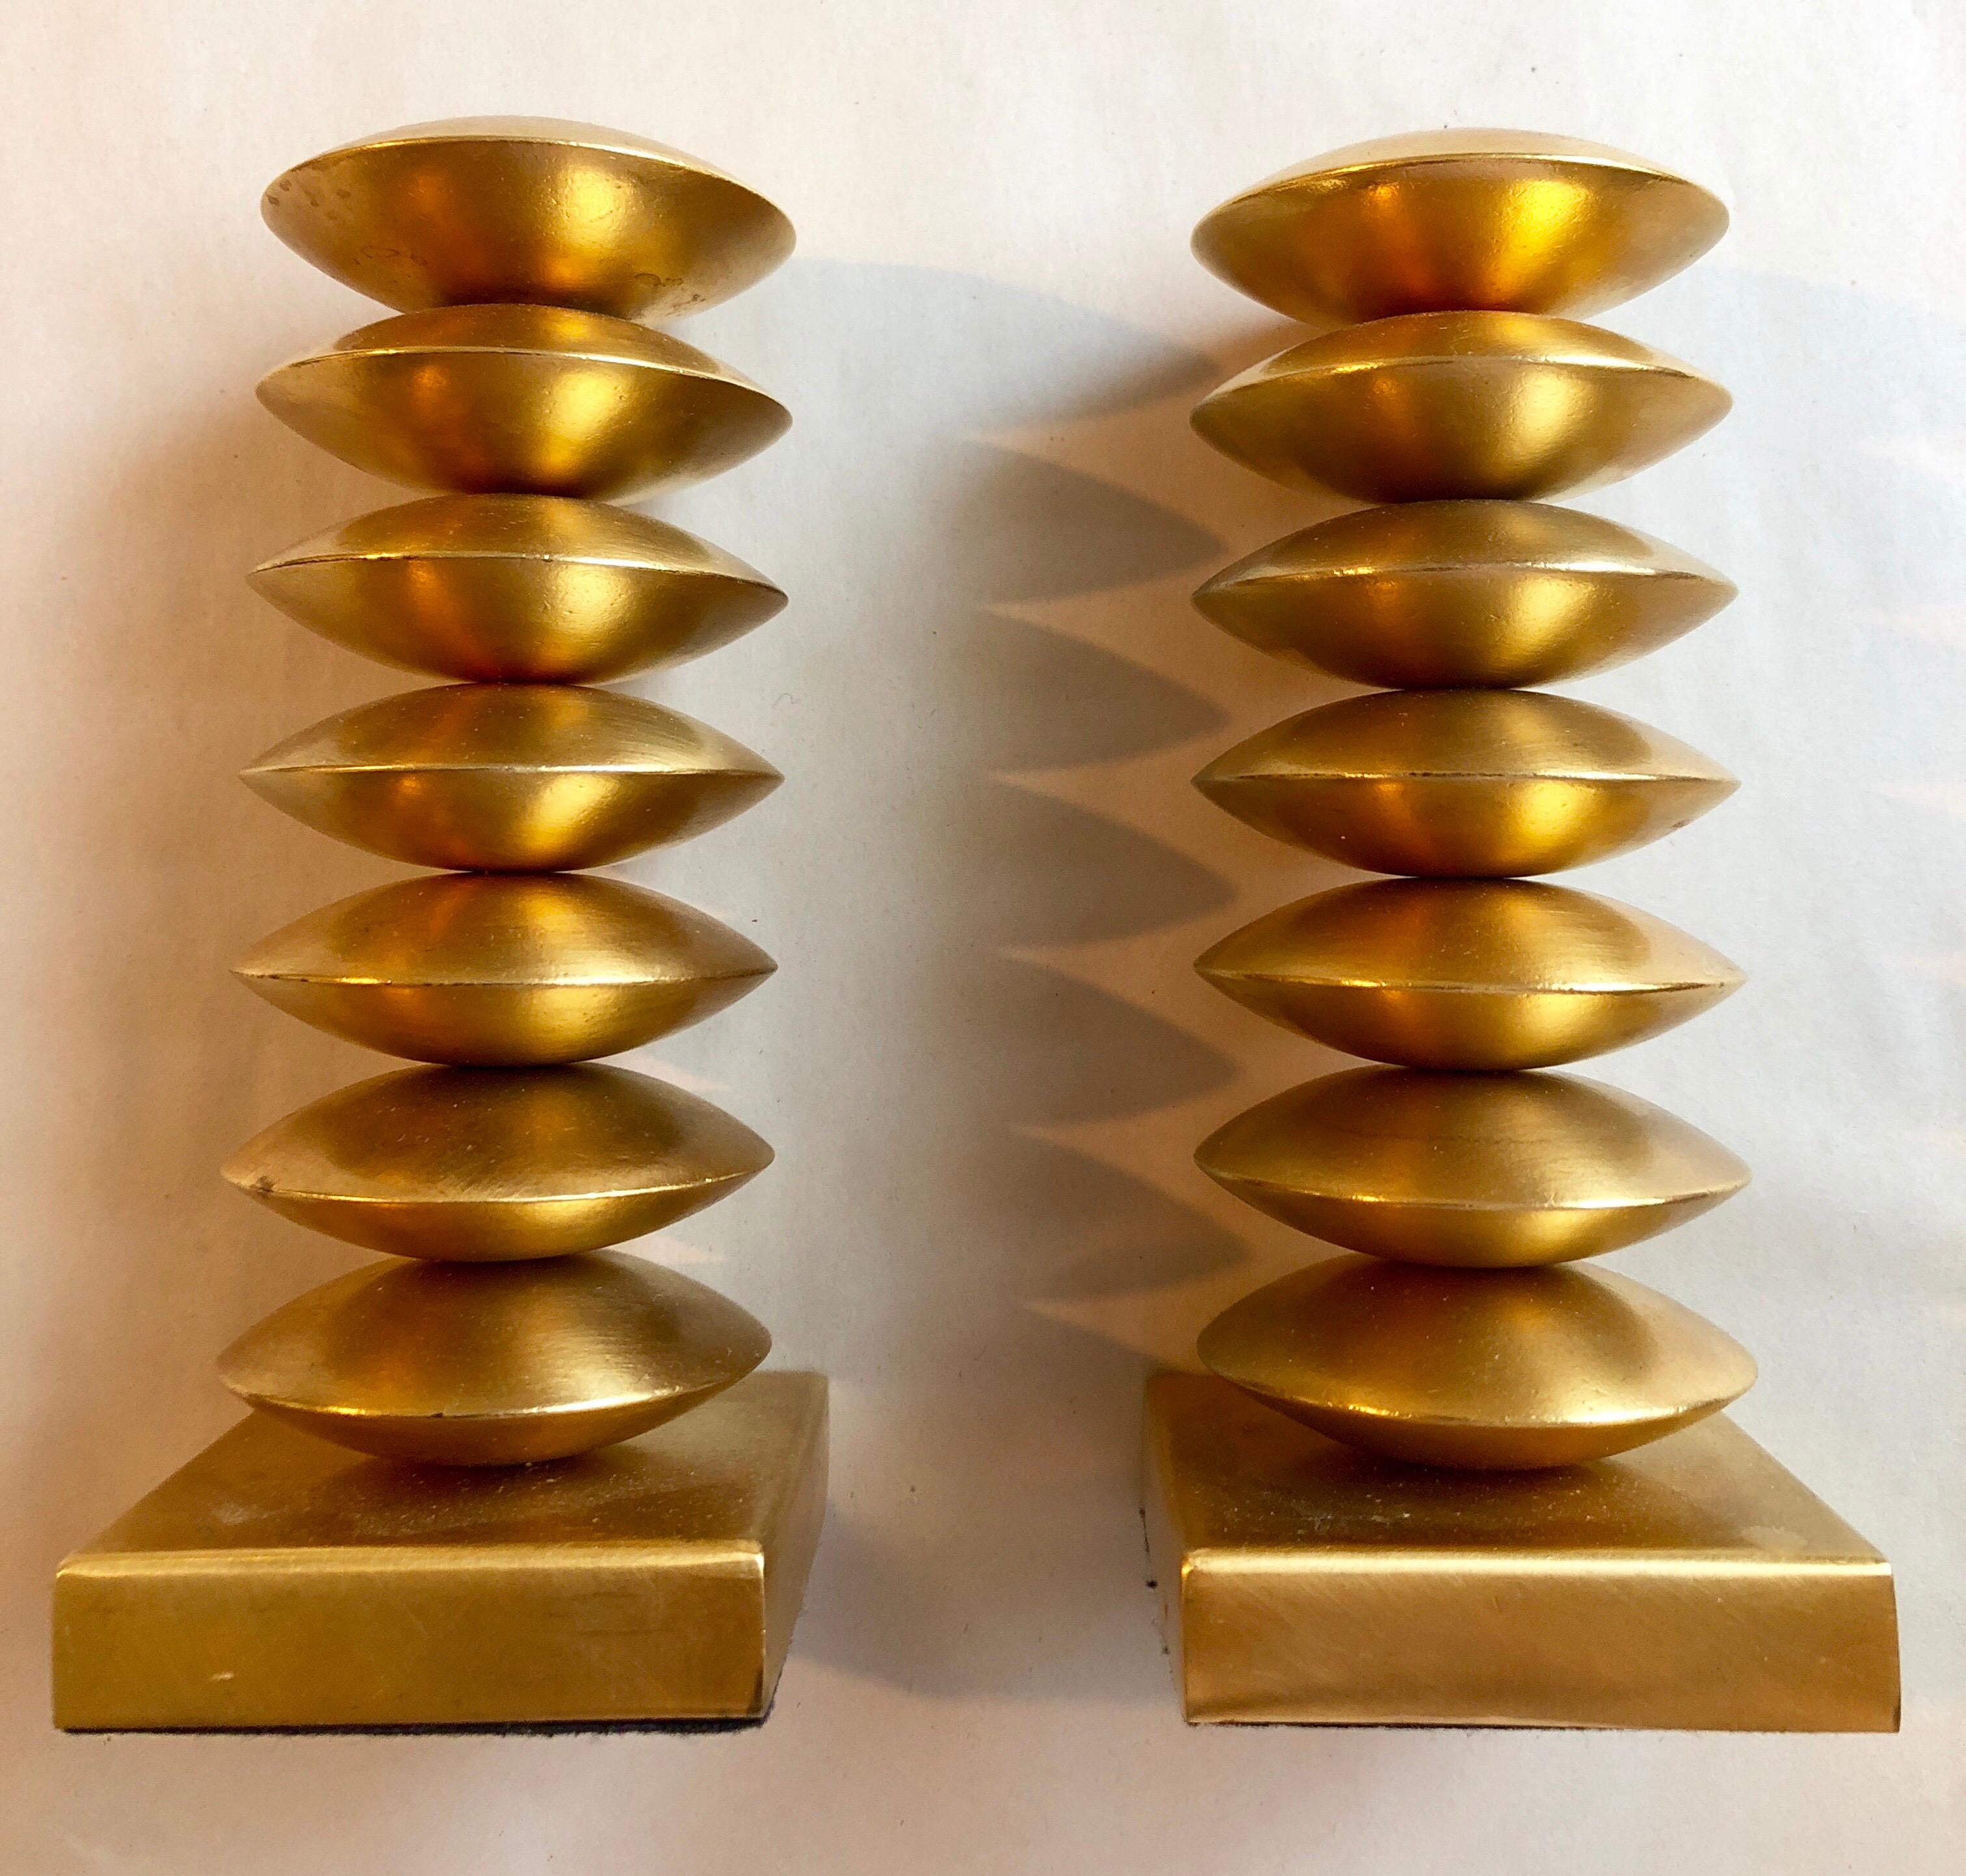 Elégants bougeoirs en métal au design doré, circa 1980, France. Signé de façon illisible sur le feutre inférieur. Il semble qu'il s'agisse d'Elizabeth et ensuite d'autre chose mais ce n'est pas clair. Ces bougeoirs sont peut-être conçus par Garouste